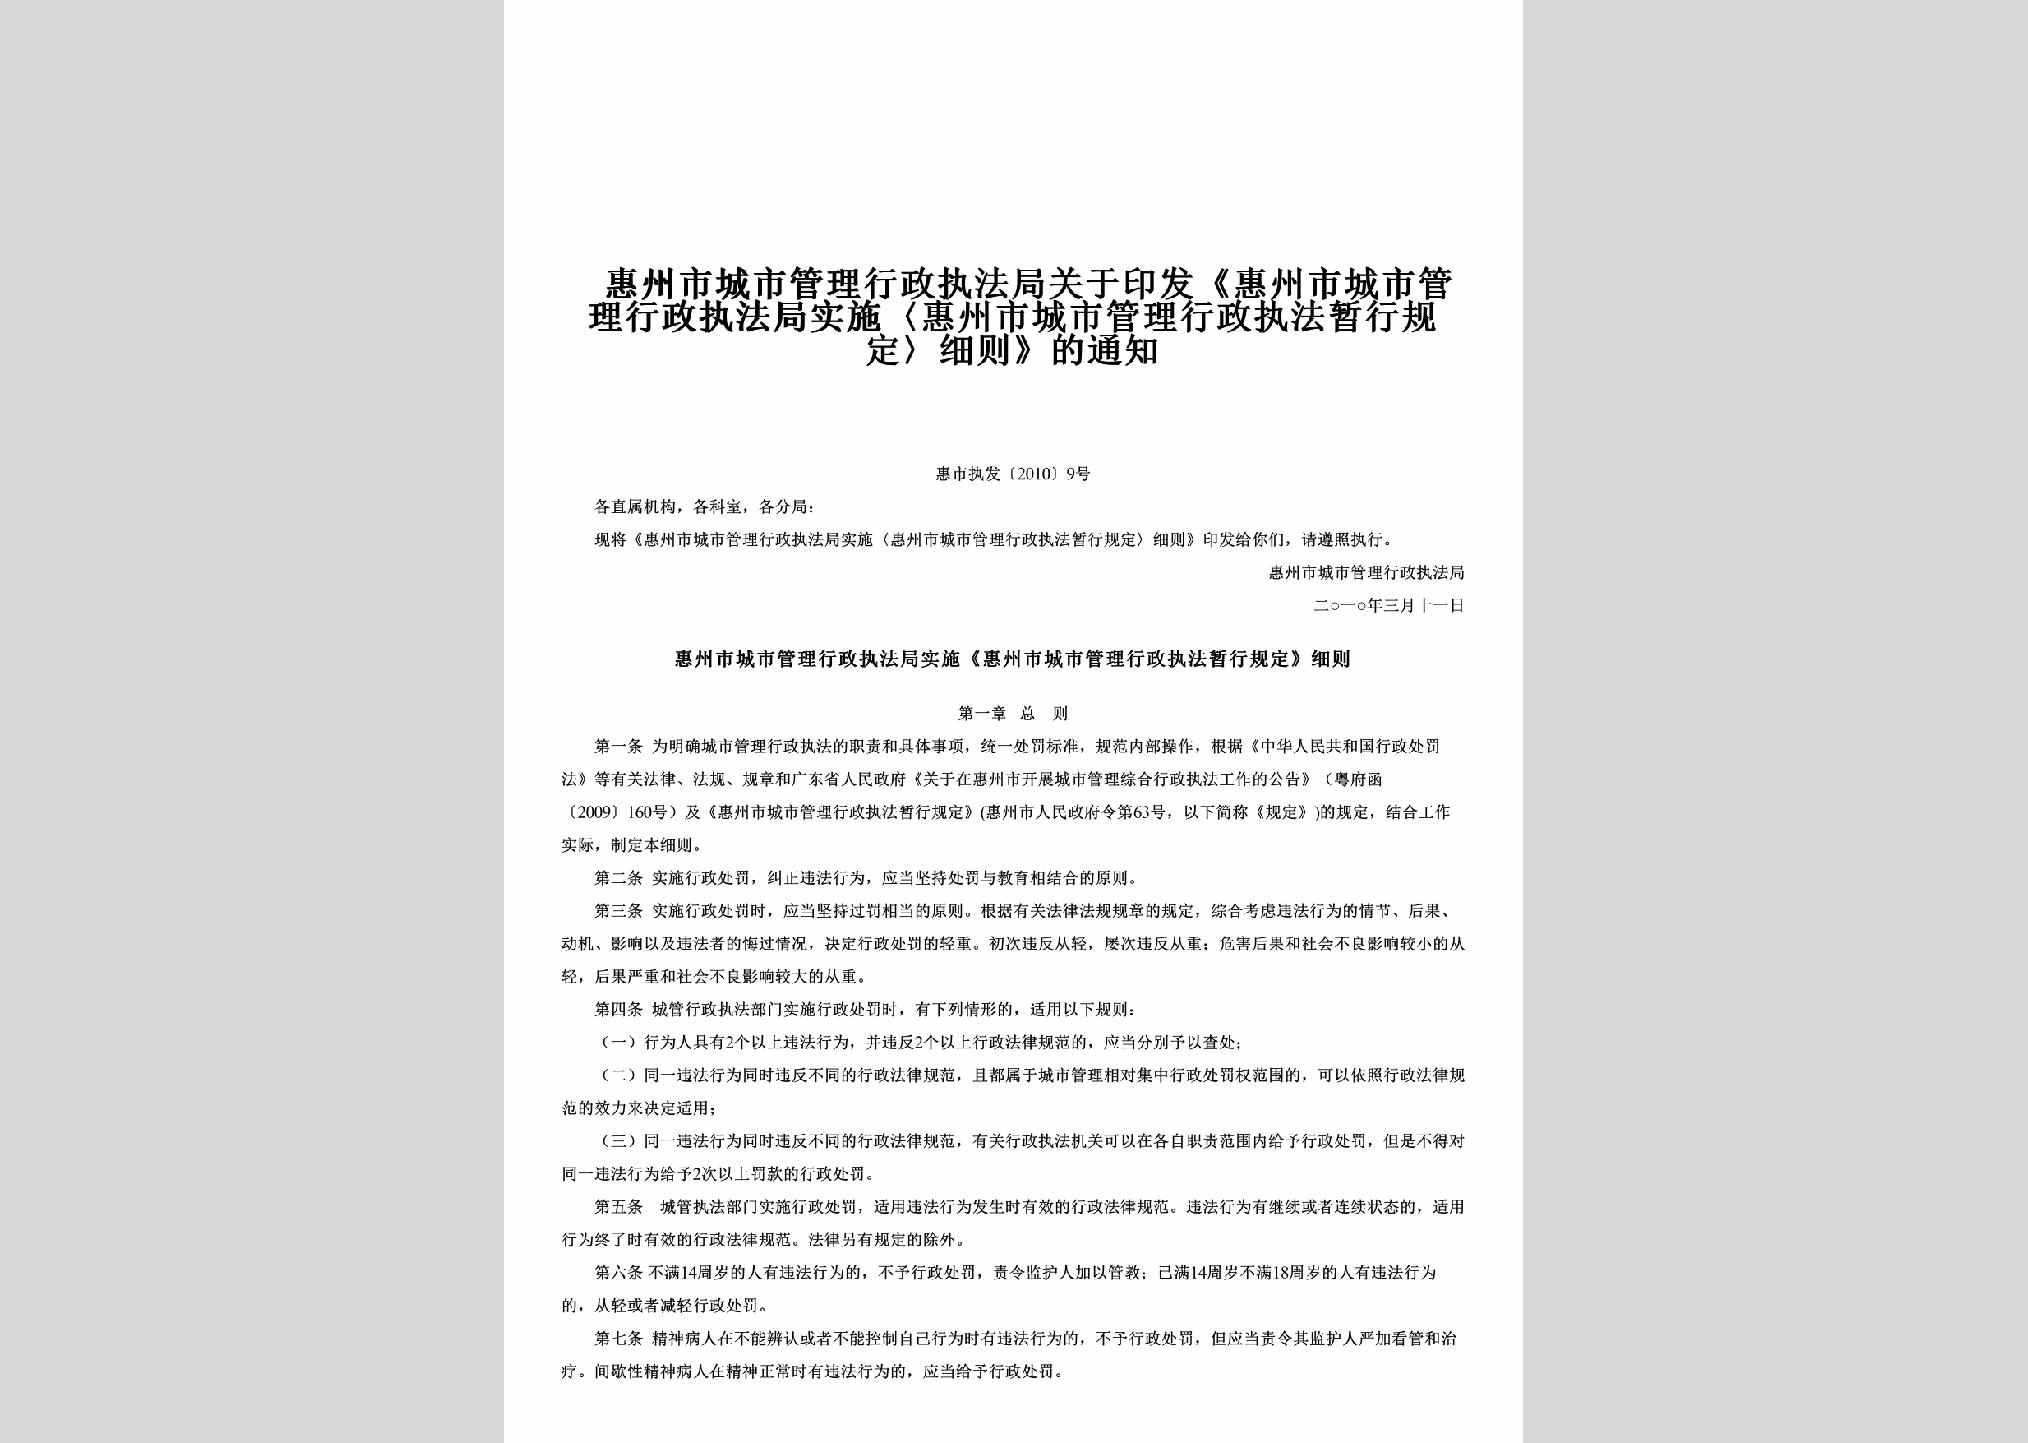 惠市执发[2010]9号：关于印发《惠州市城市管理行政执法局实施〈惠州市城市管理行政执法暂行规定〉细则》的通知